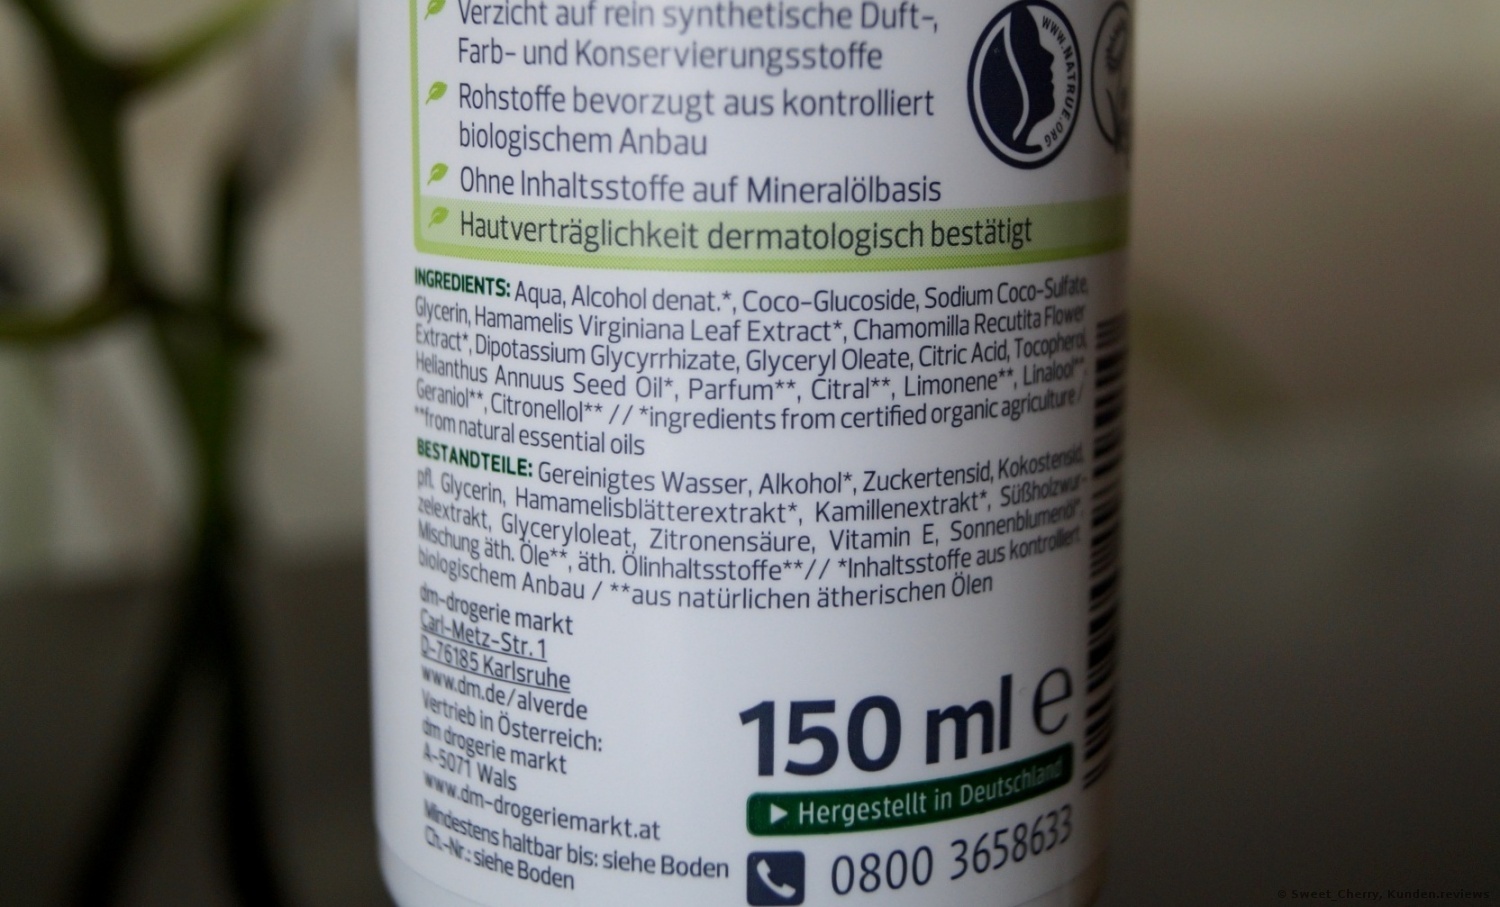 alverde NATURKOSMETIK Reinigungsschaum Sensitiv 3in1 mit Hamamelisblätter- und Kamillen-Extrakt